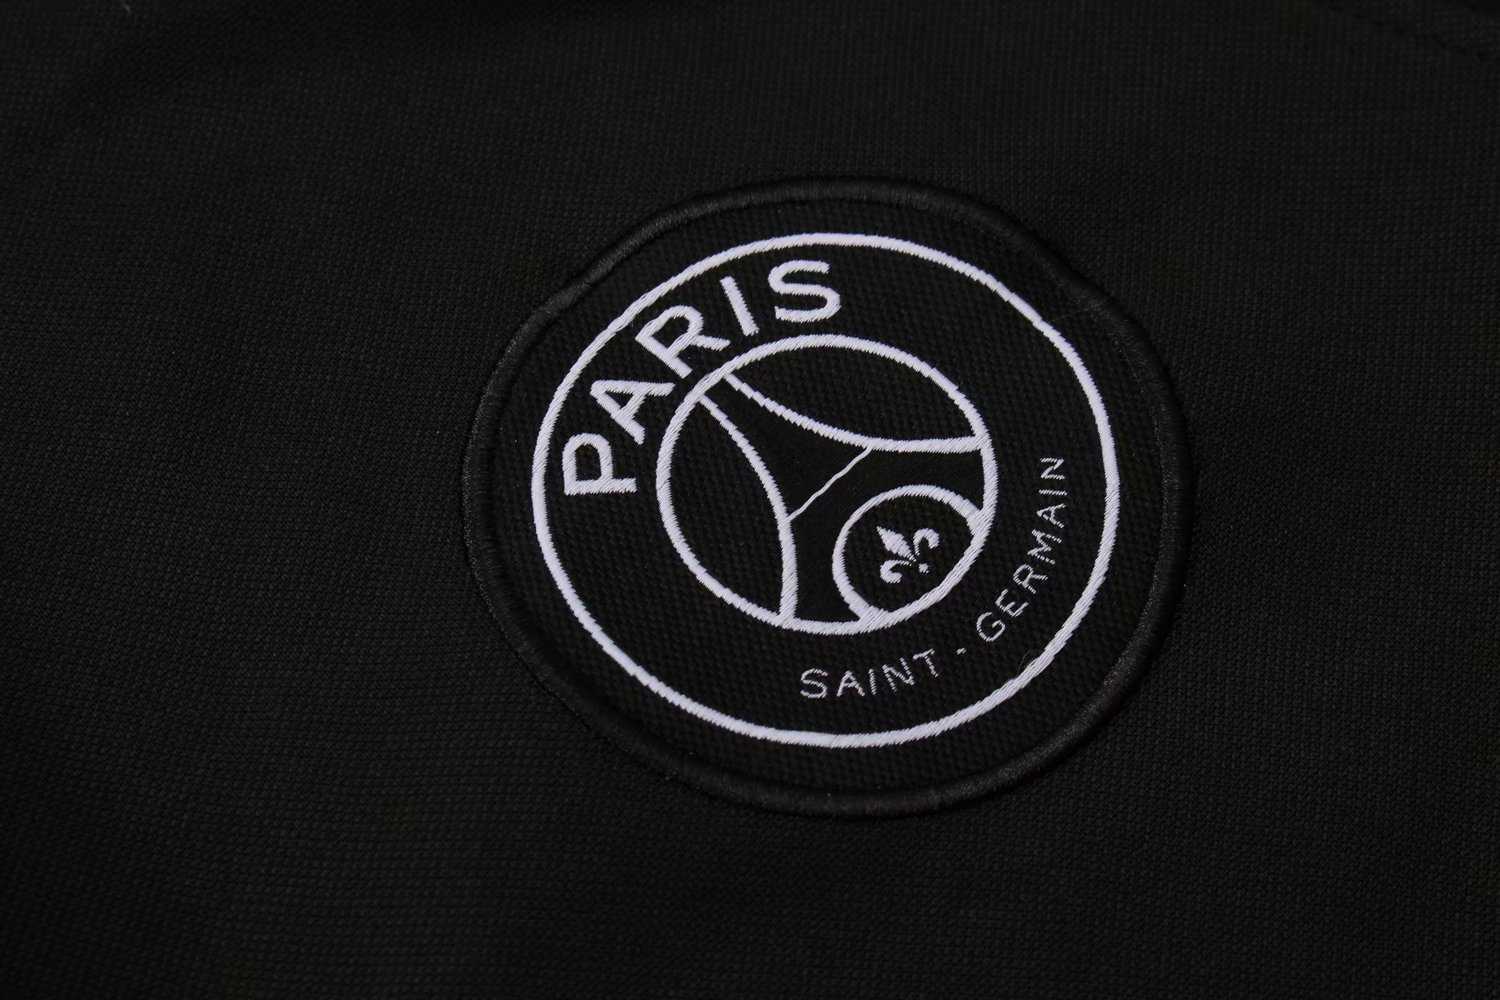 2019/20 PSG x Jordan Hoodie Black Mens Soccer Training Suit(Jacket + Pants)